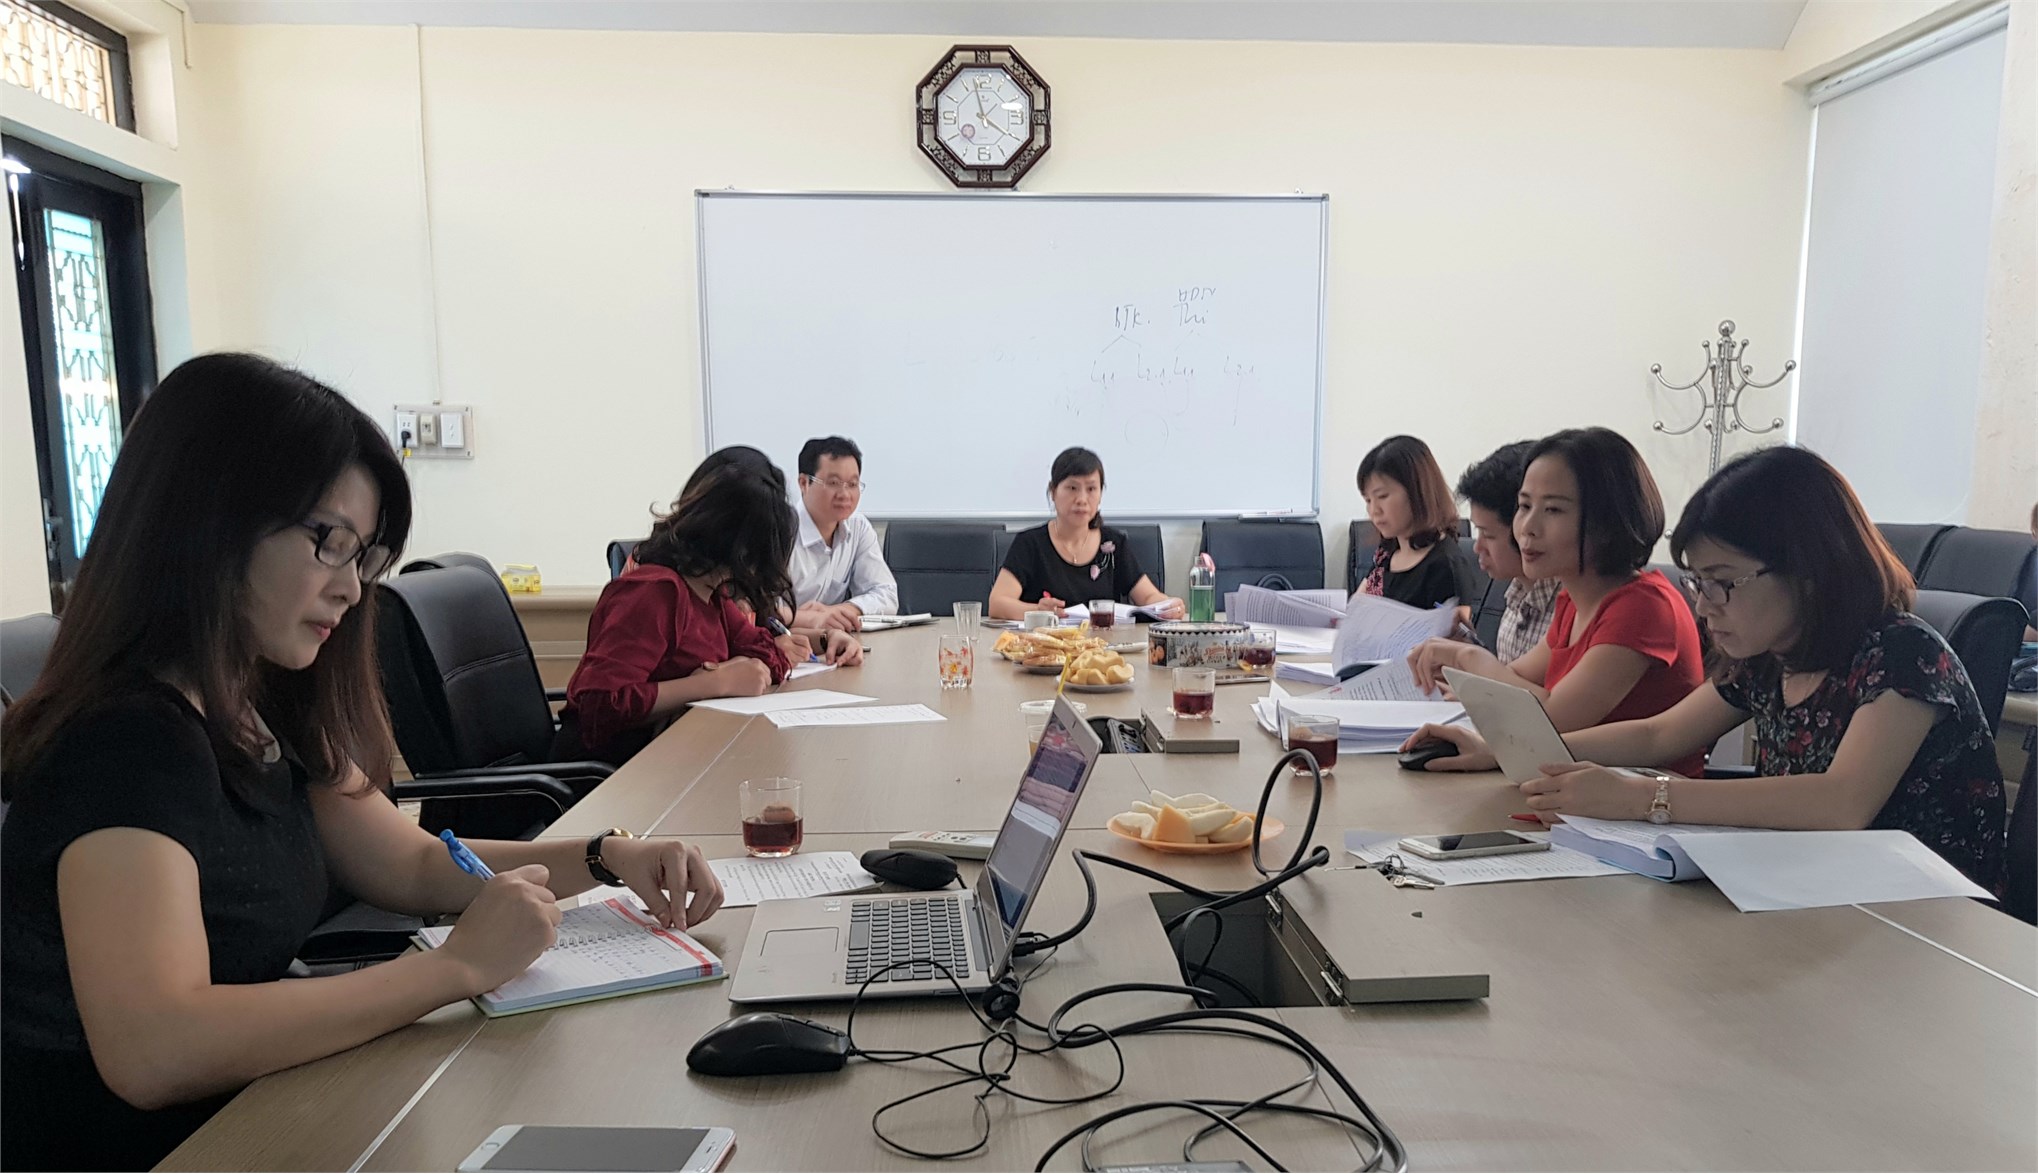 Chương trình giao lưu sinh viên quốc tế hè 2019 giữa Trường Đại học Công nghiệp Hà Nội và Trường Đại học Khoa học Kỹ thuật Quảng Tây – Trung Quốc